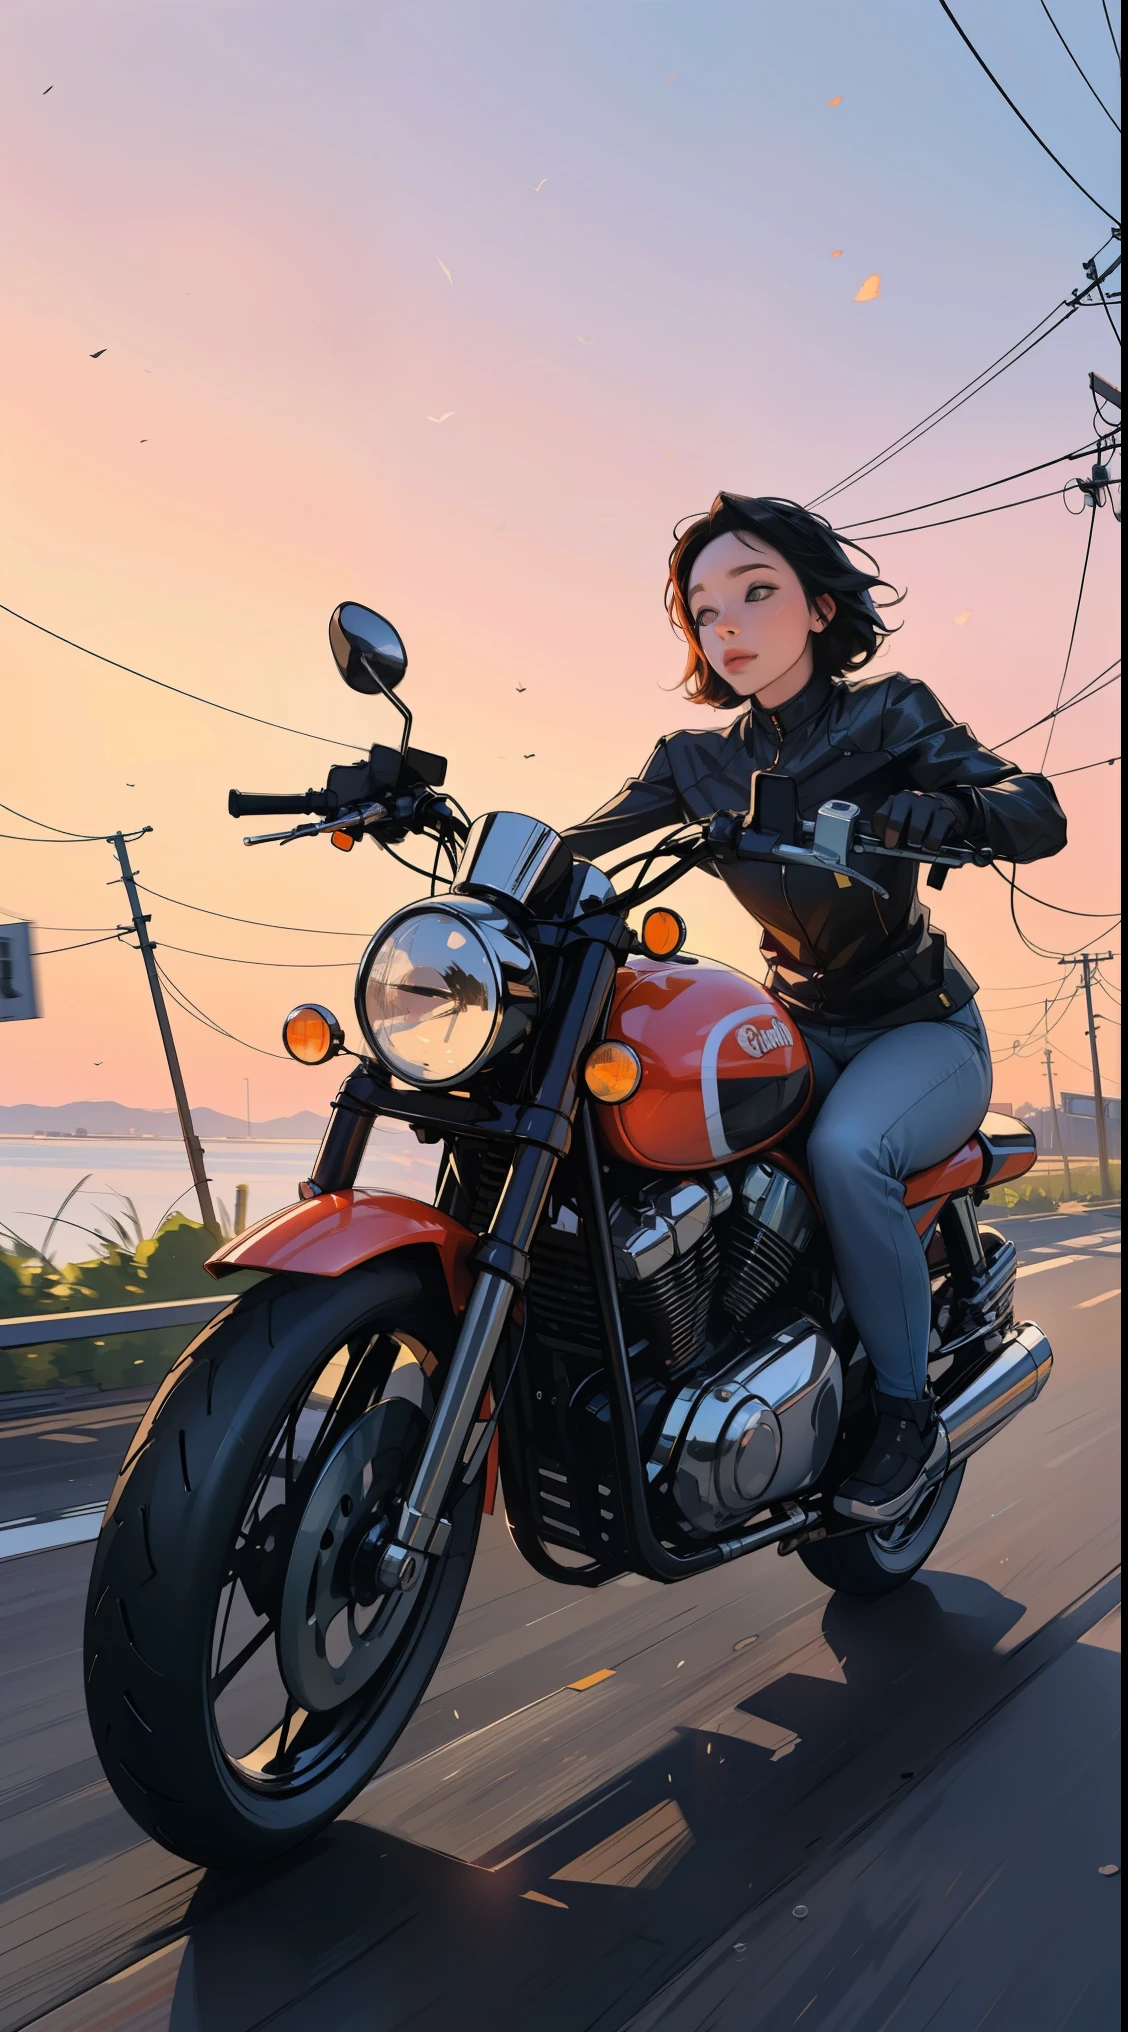 Uma mulher em uma motocicleta, pôr do sol, vazamentos de luz, ambient, tons fortes, 